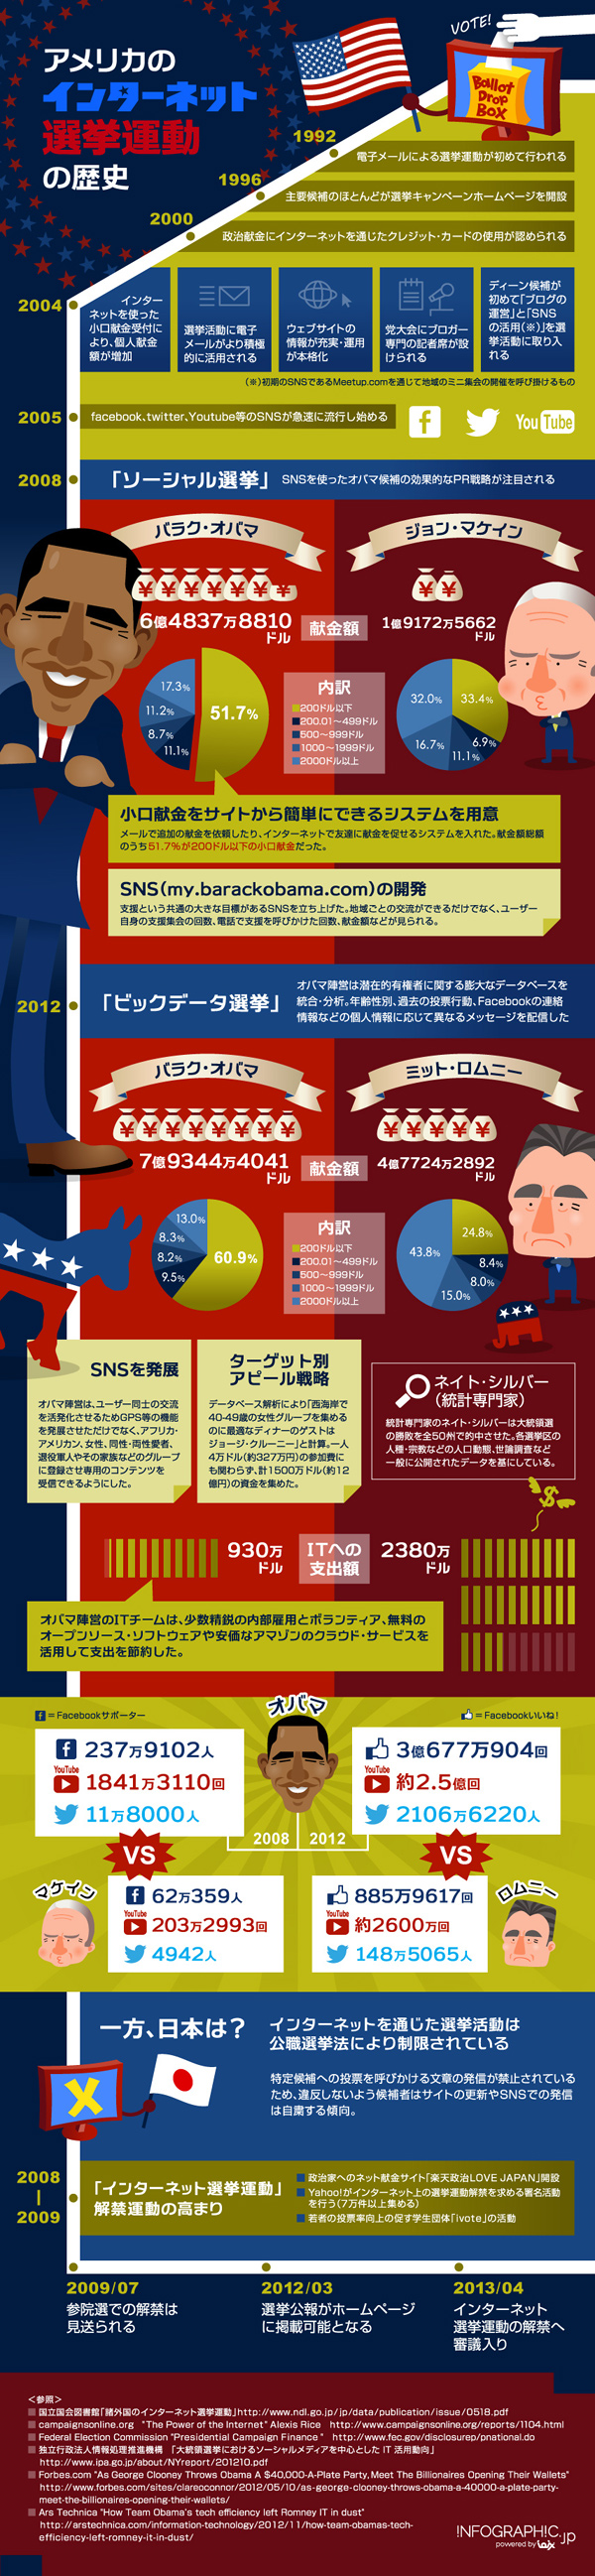 インフォグラフィックス:米国のネット選挙運動の歴史をまとめたインフォグラフィック